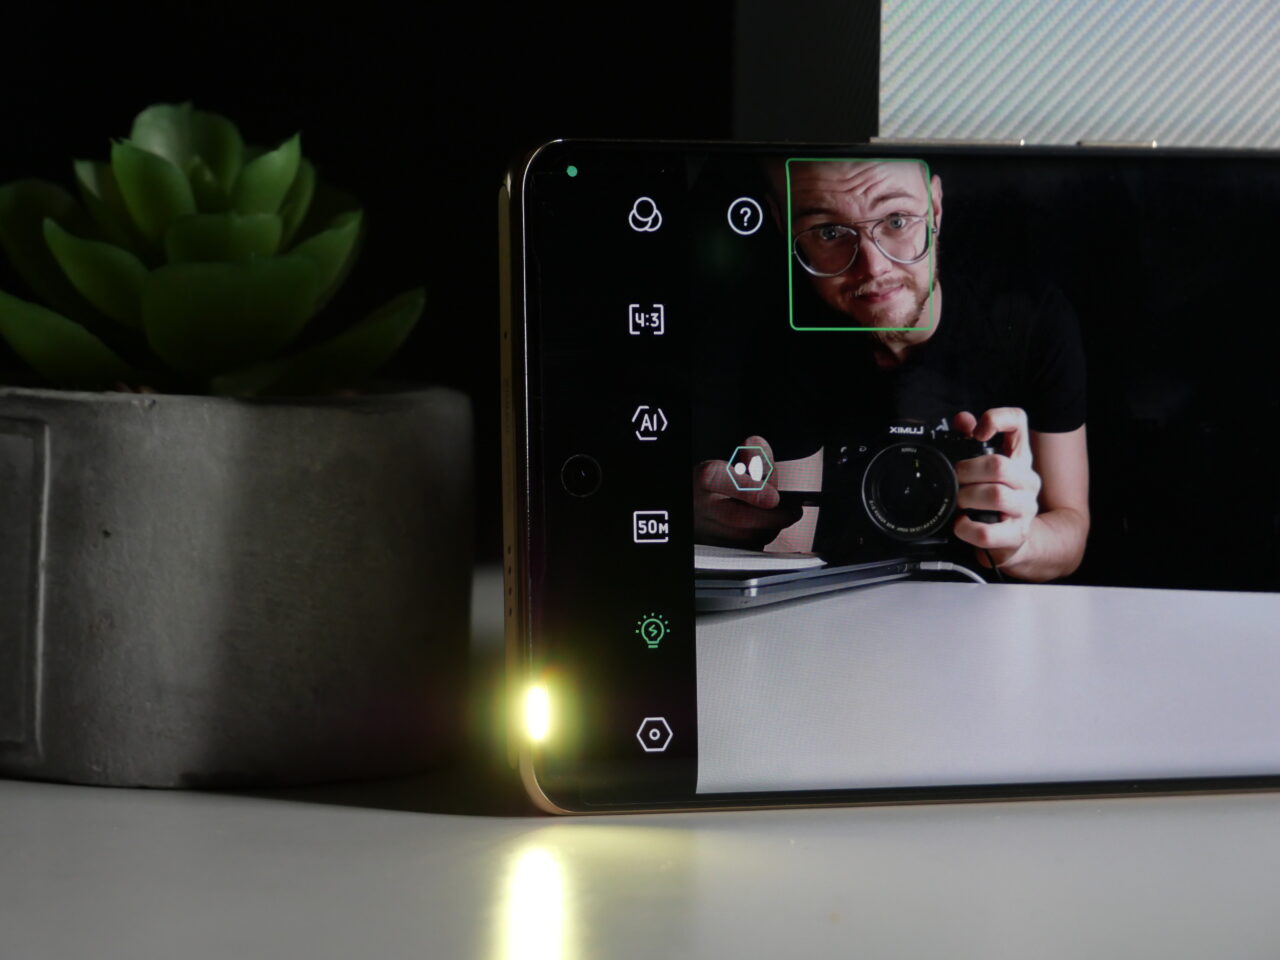 Człowiek robiący selfie za pomocą smartfona, który leży na biurku obok doniczki z zieloną rośliną; twarz człowieka jest wykadrowana na ekranie smartfona.